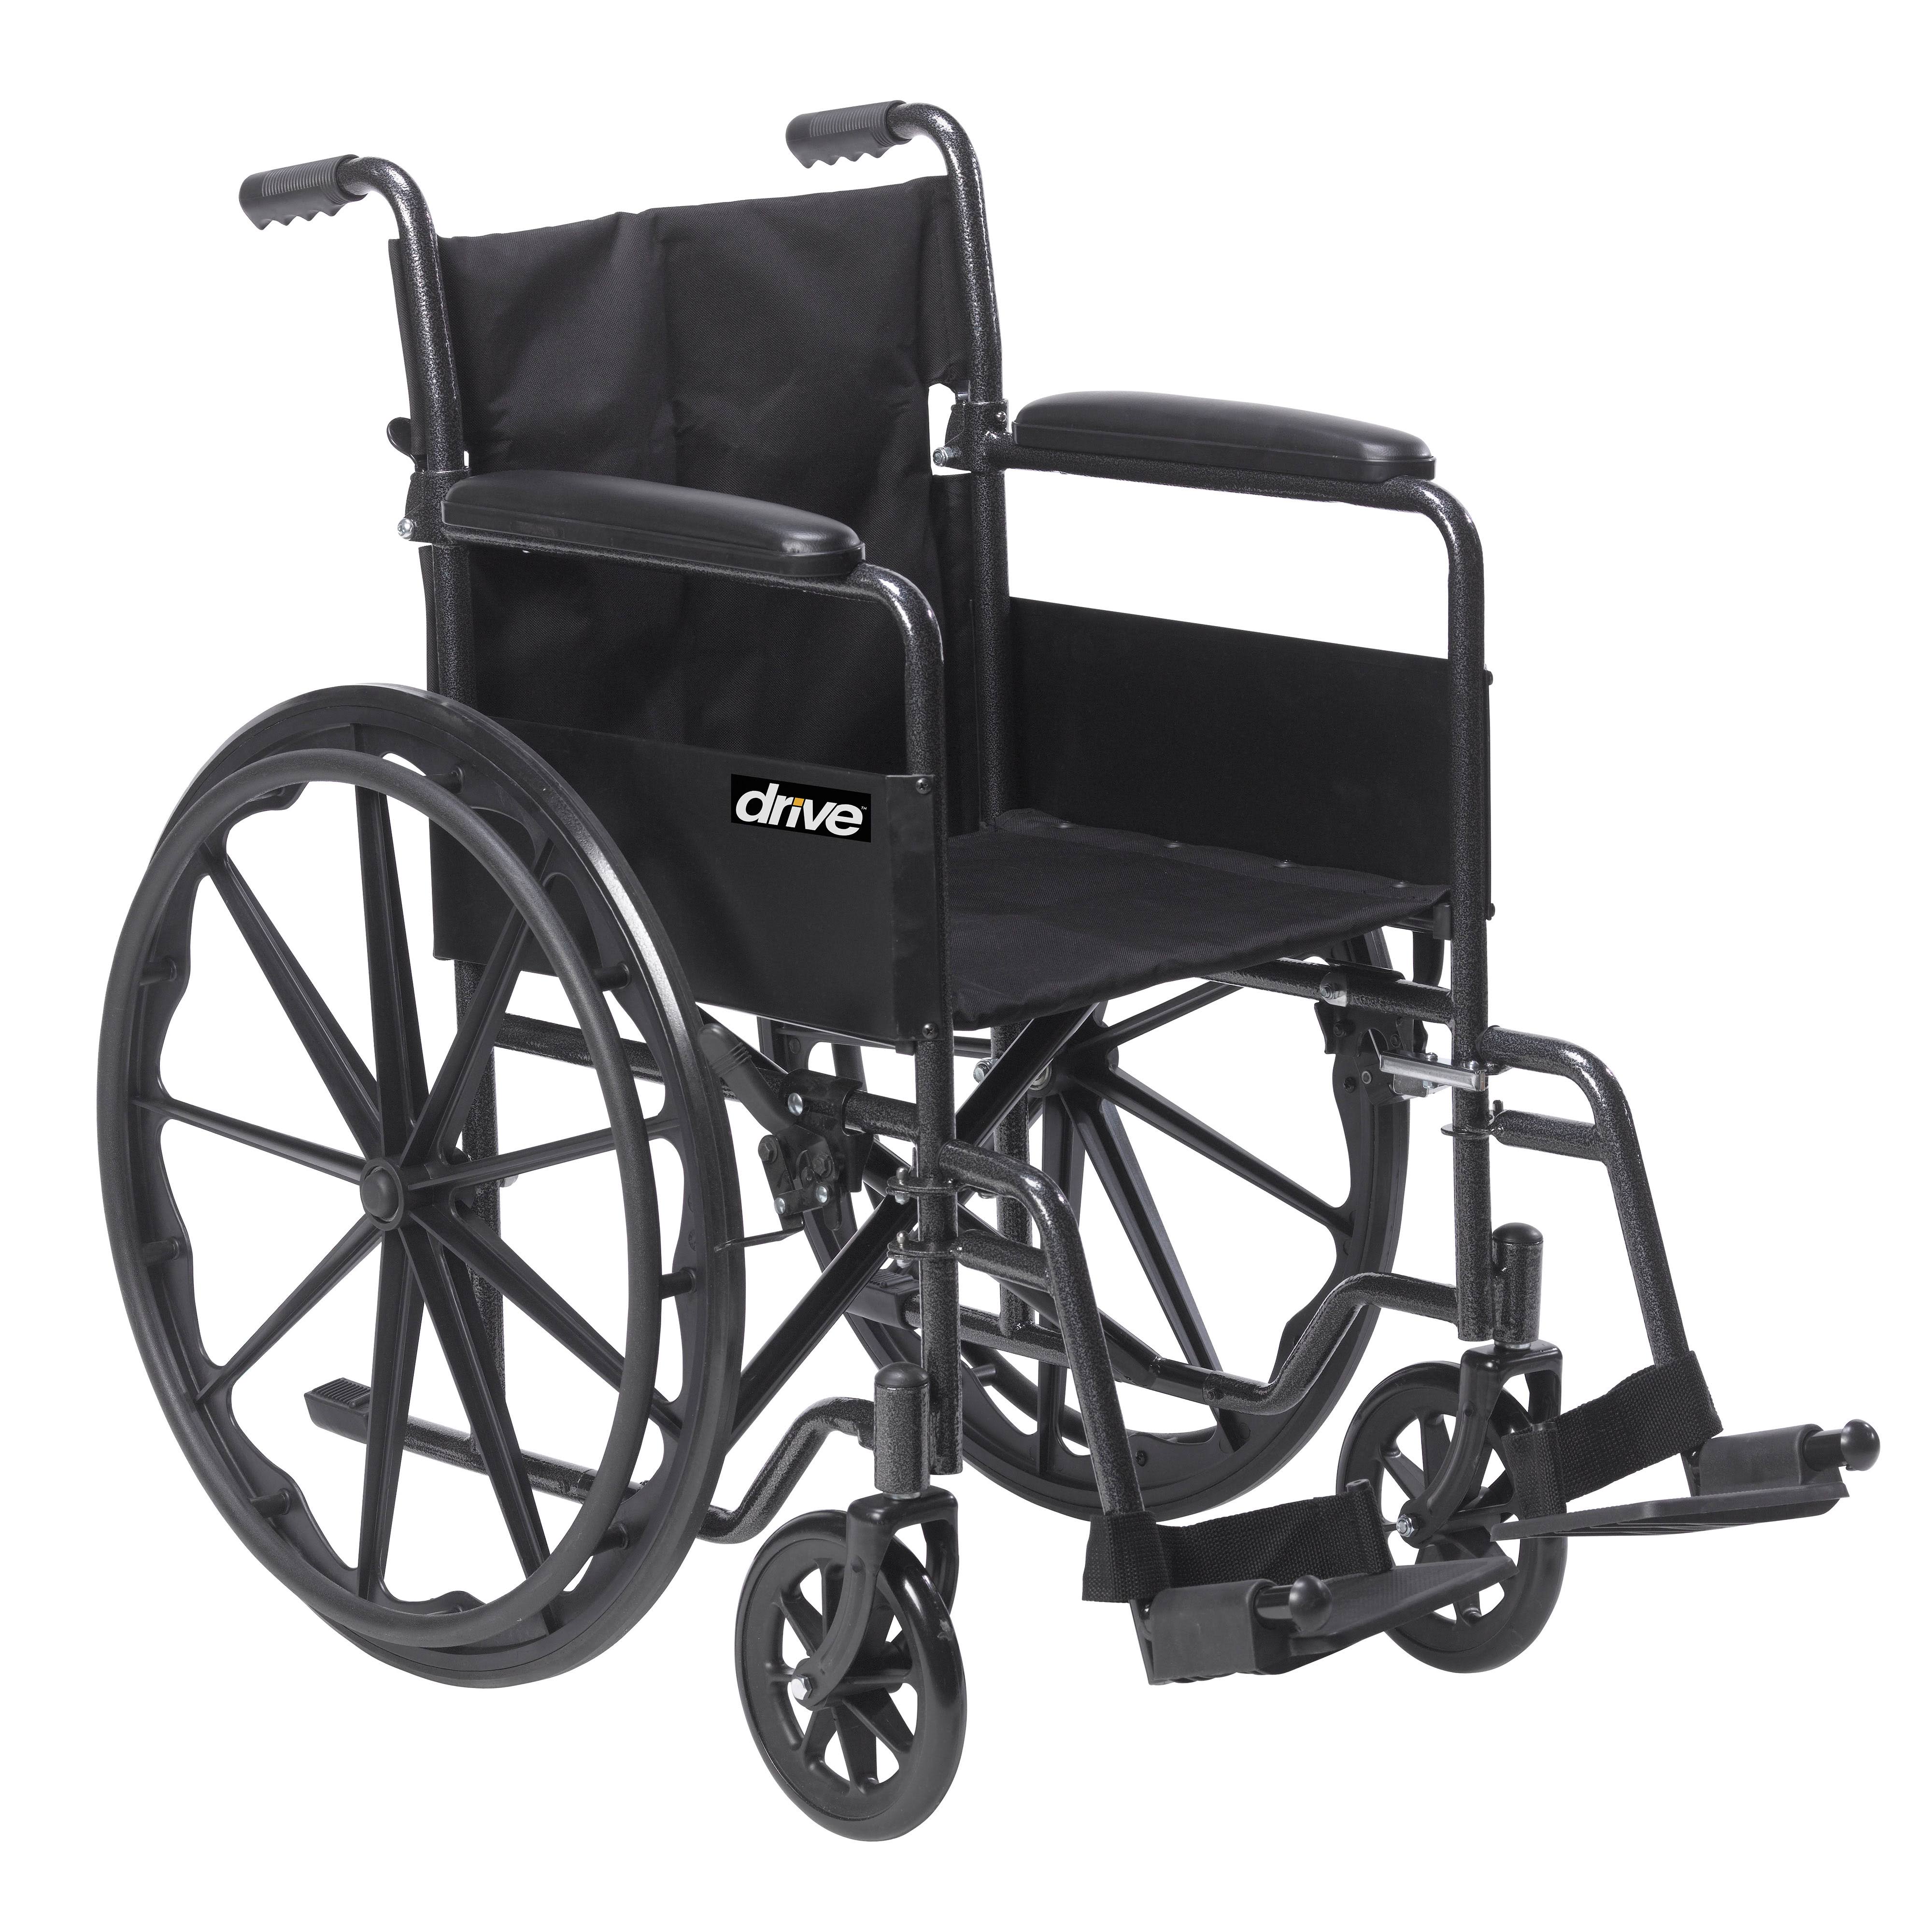 Drive Medical Silla de ruedas Silver Sport 1 con brazos completos y reposapiés extraíble abatible